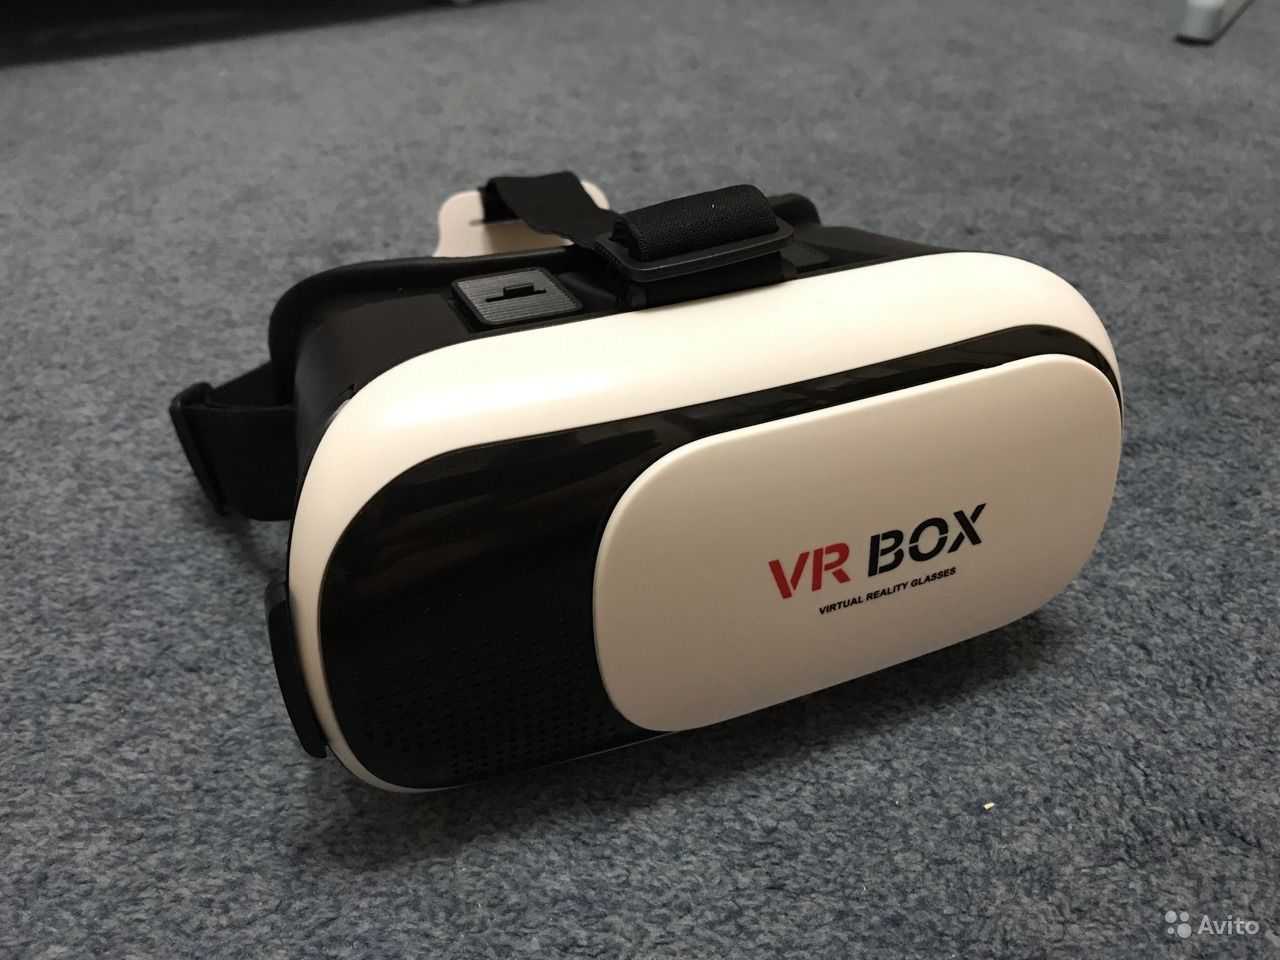 Обзор очков виртуальной реальности vr3 от smarterra: недорогие и бесполезные?